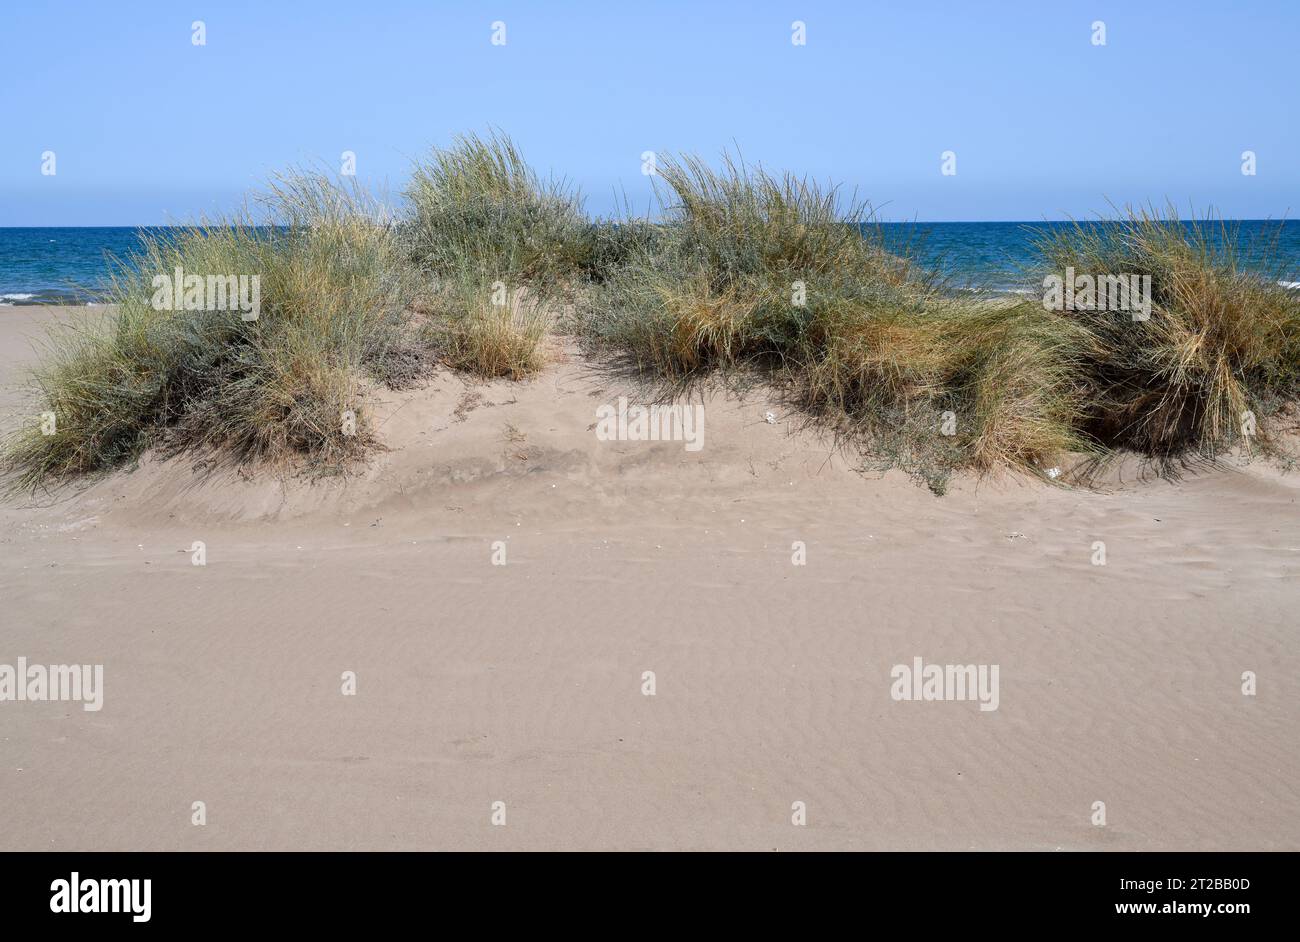 L'erba-lettino di sabbia (Elymus farctus, Thinopyrum junceum o Agropyron junceum) è un'erba perenne originaria delle coste dell'Eurasia. Questa foto è stata scattata a Delta Foto Stock